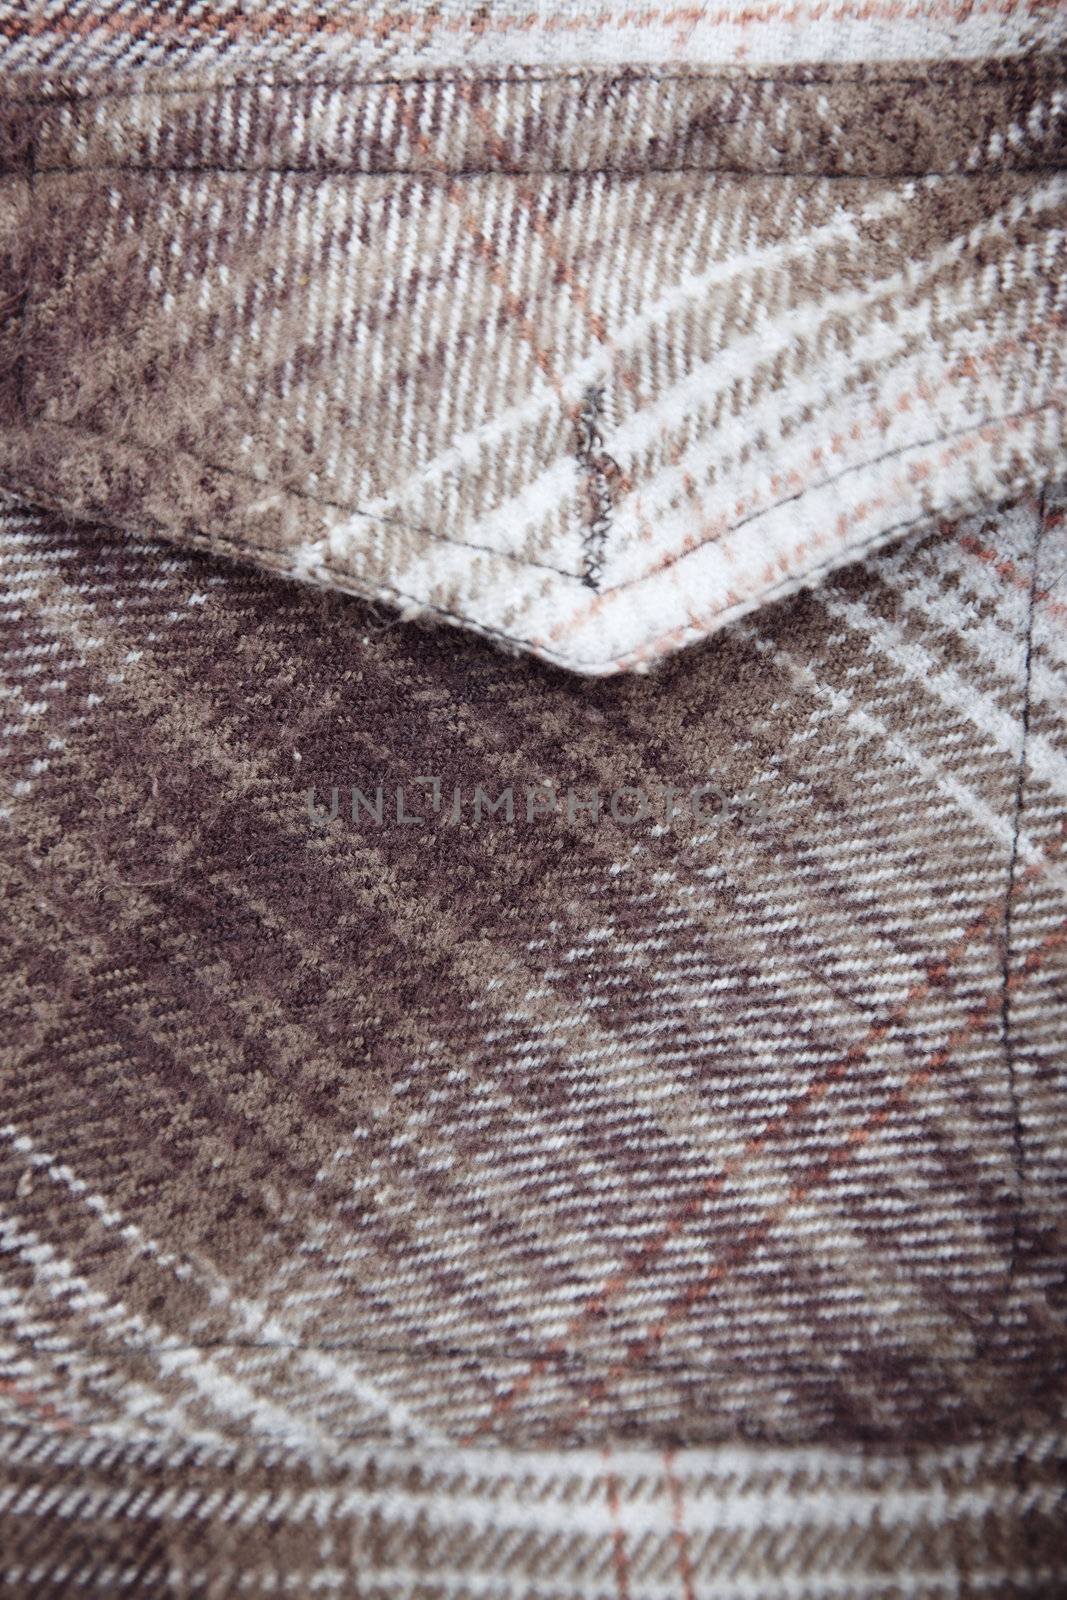 Pocket of woolen shirt by Novic